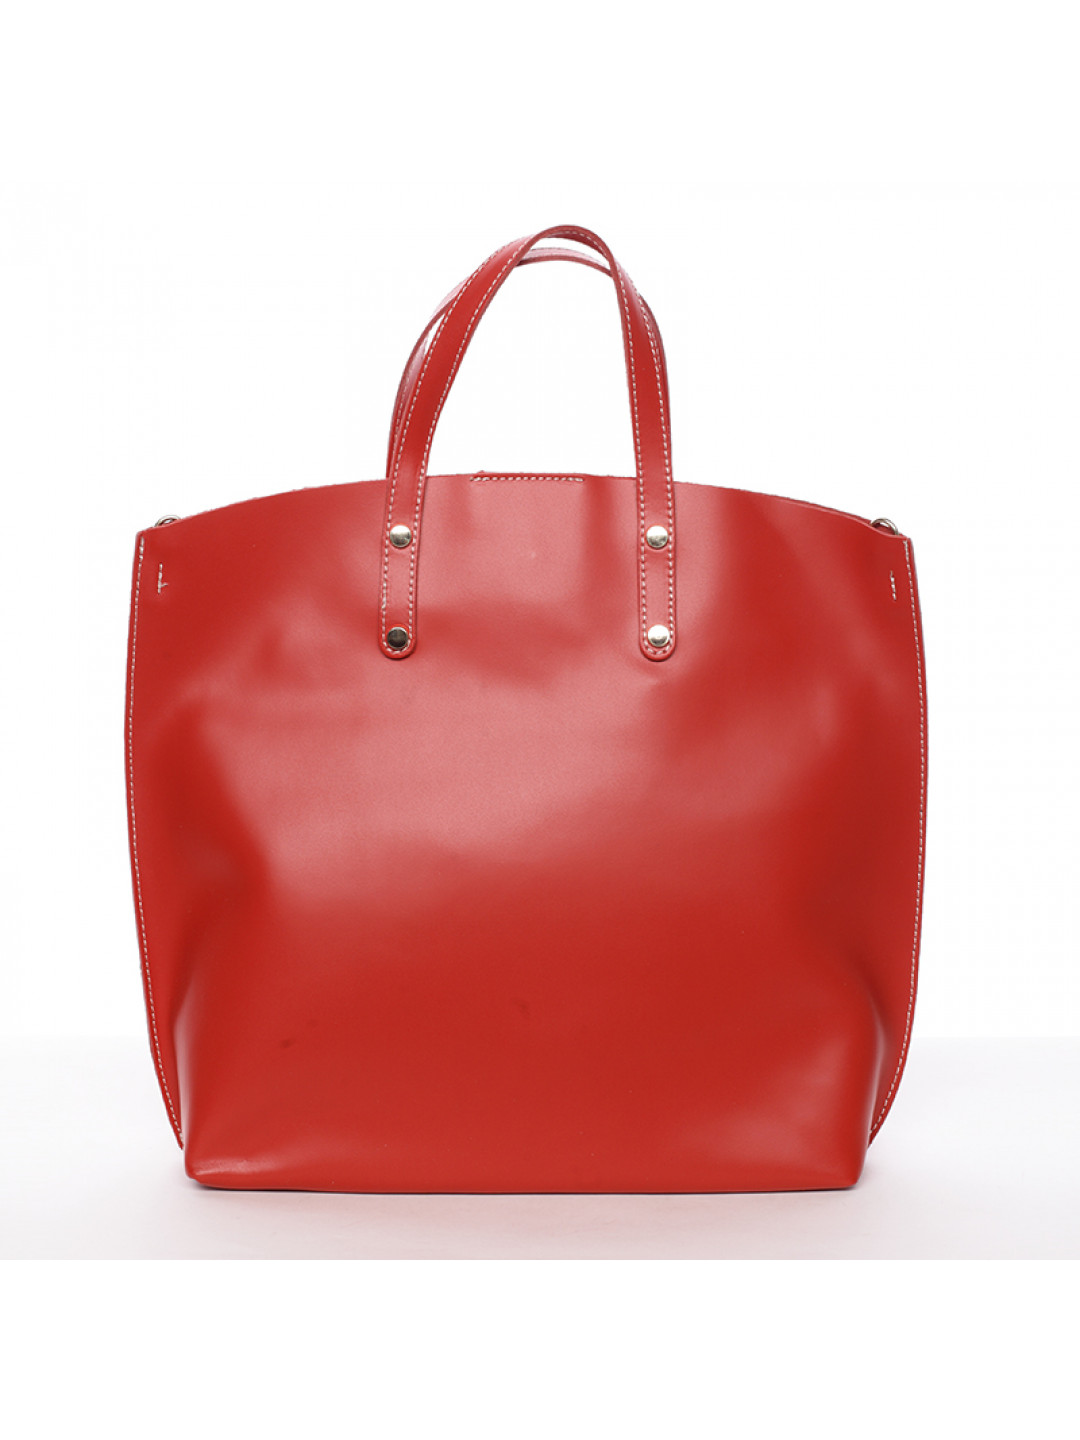 Dámská kožená kabelka červená – Delami Weronia